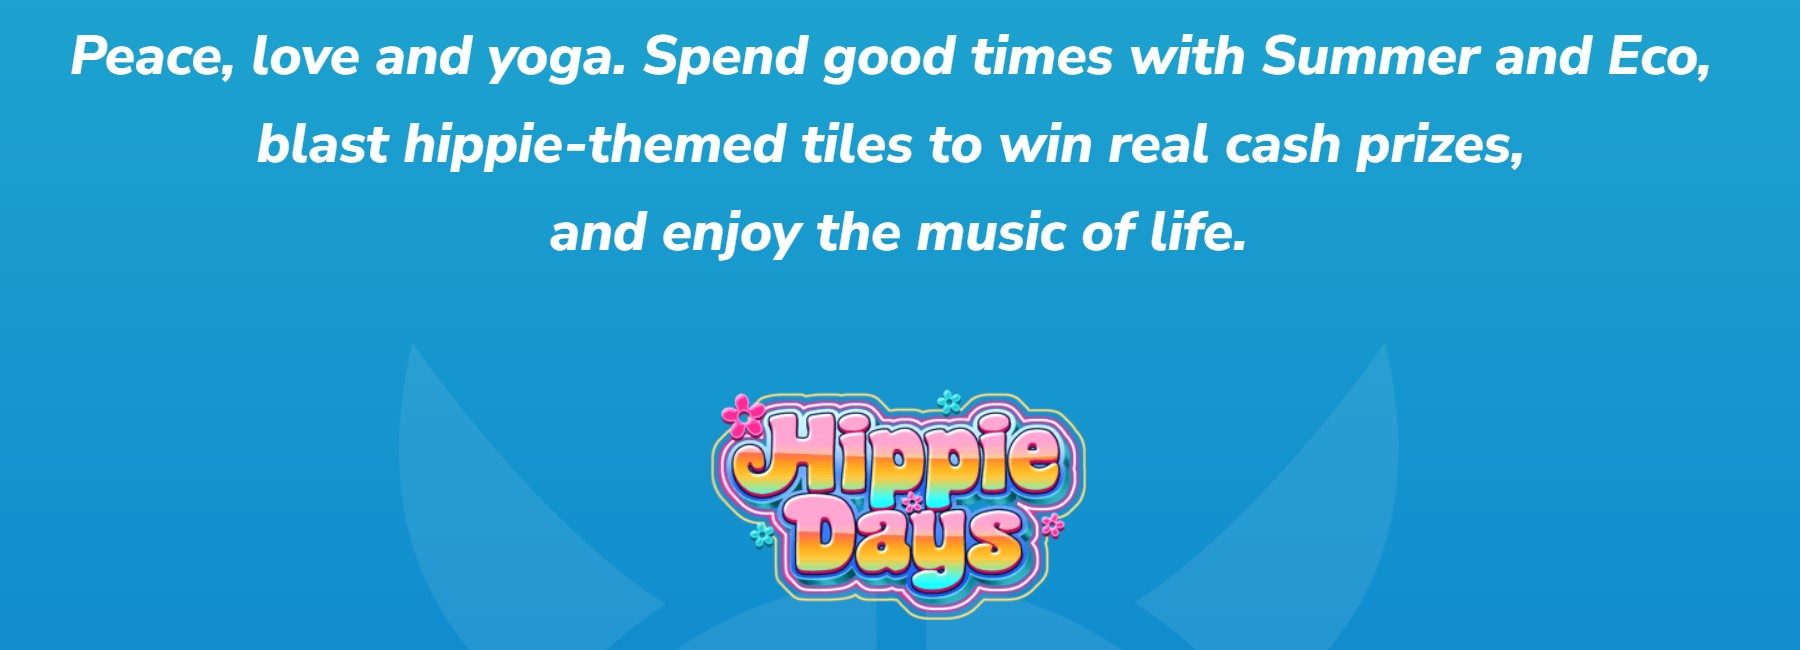 Ikhtisar Hippie Days